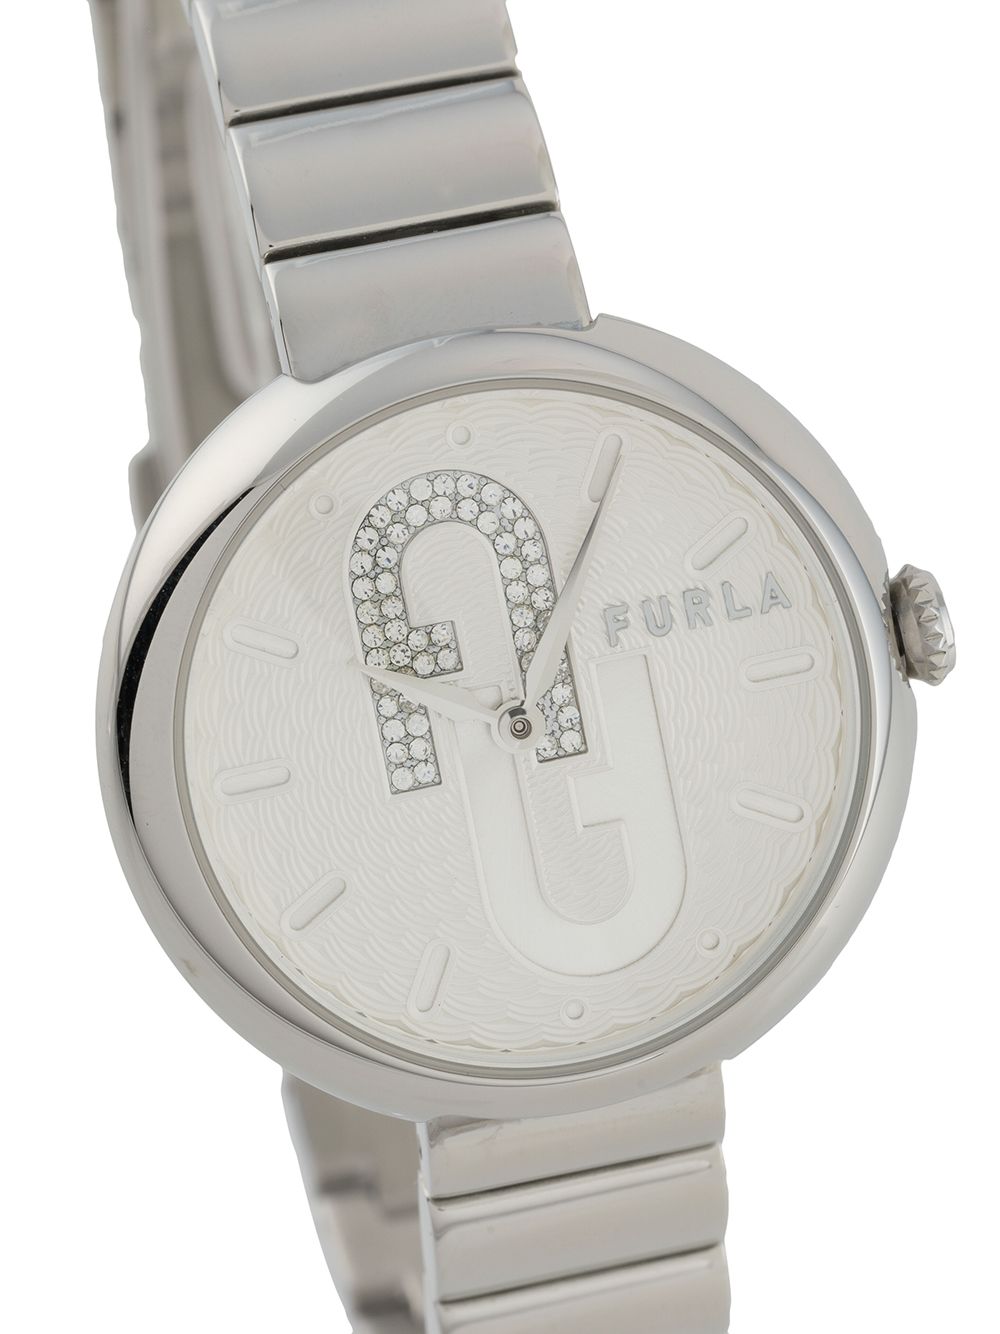 фото Furla наручные часы blubble с круглым корпусом